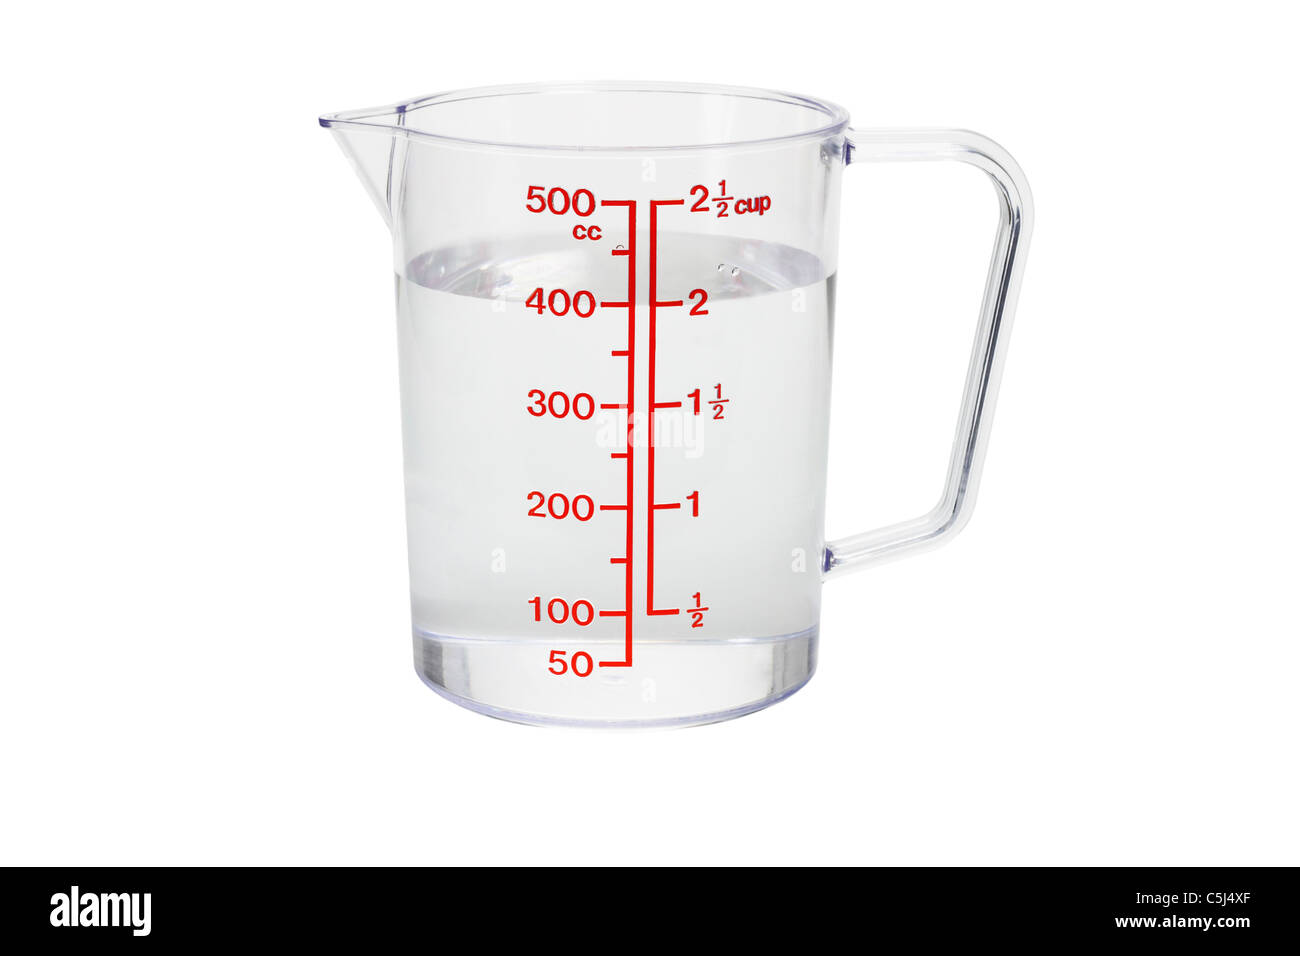 Cuisine en plastique rempli d'une tasse à mesurer 400 cc d'eau sur fond blanc Banque D'Images